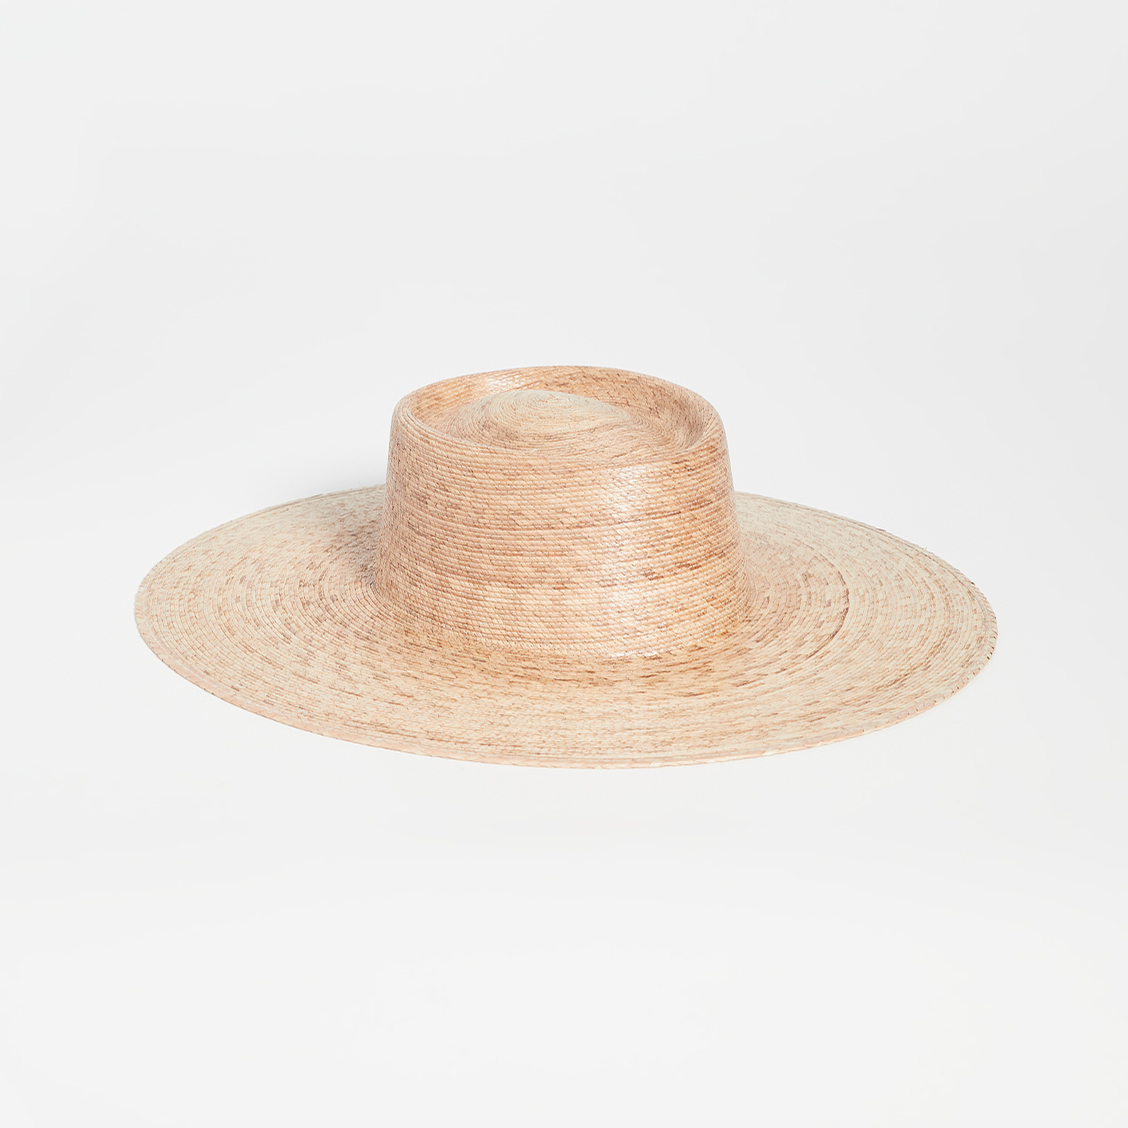 Lack of Color Palm Wide Boater Hat Summer Hats for Cottagecore Wedding or Elopement Bridal Musings 1 - 25 chiếc mũ cô dâu mùa hè hợp thời trang cho chuyến đi của bạn Cottagecore